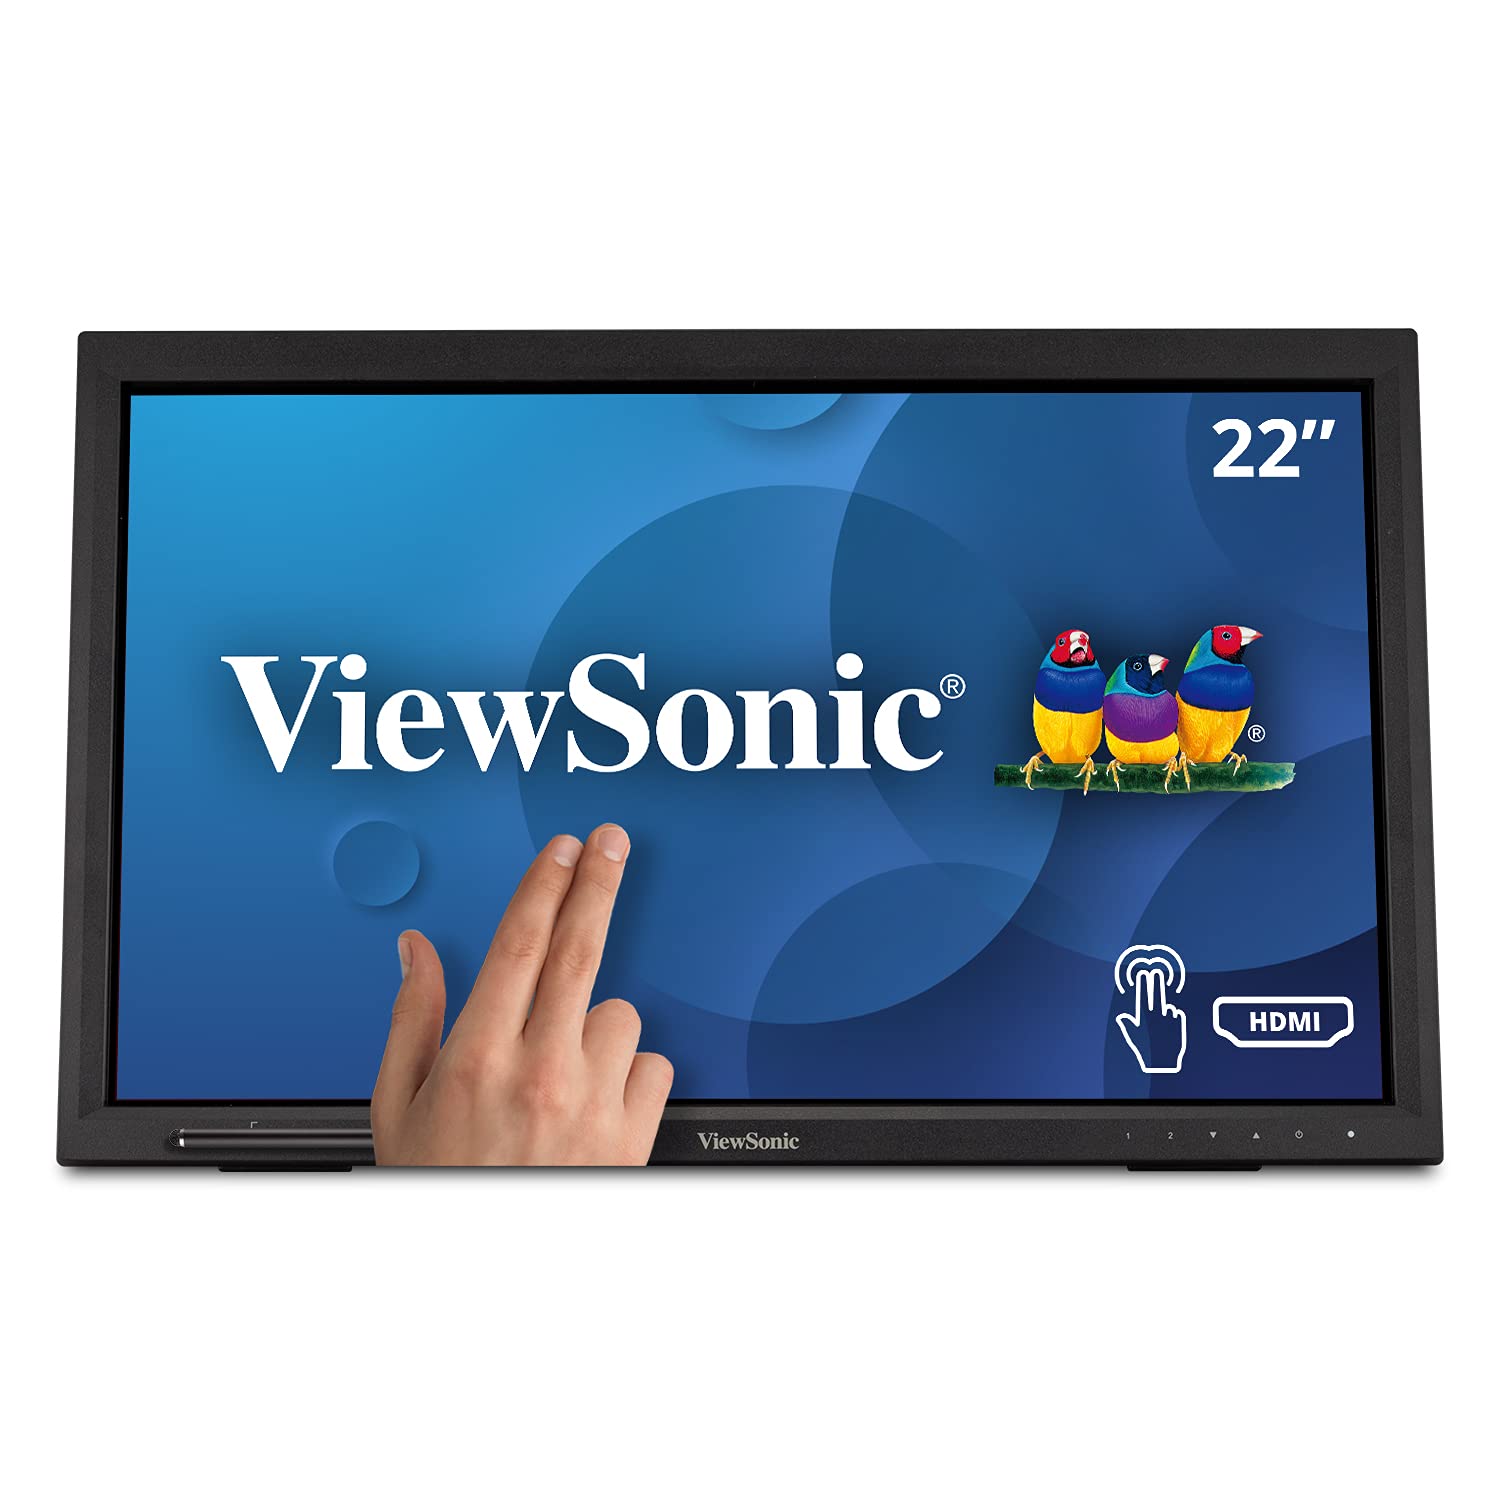 Viewsonic TD2223 54,6 cm (22 Zoll) Touch Monitor (Full-HD, HDMI, USB, 10 Punkt Multitouch, integrierter Ständer, Lautsprecher, 4 Jahre Austauschservice) Schwarz